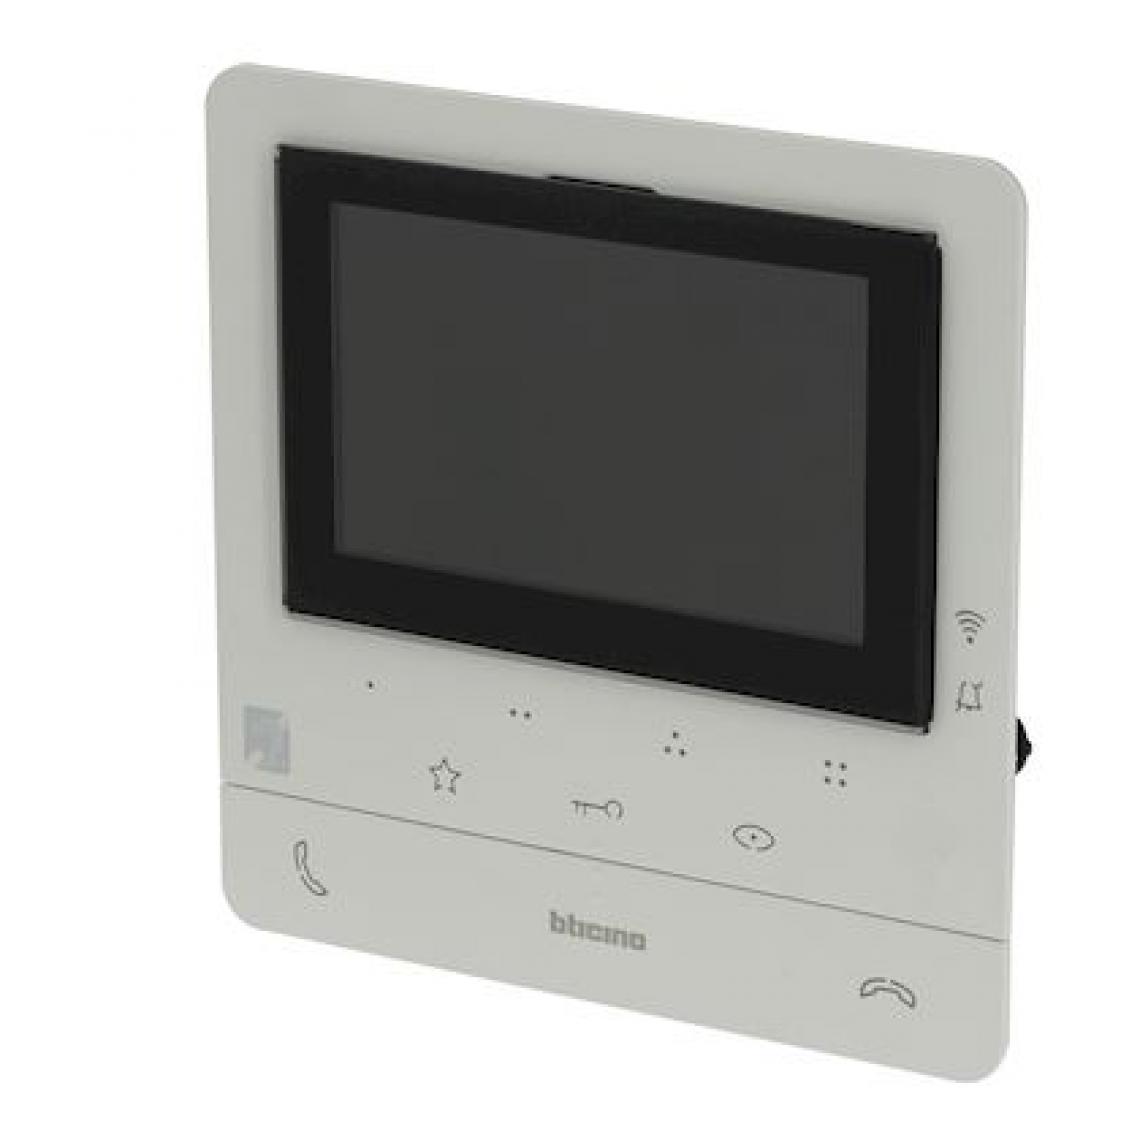 Bticino - poste intérieur - vidéo - classe 100x - connecté - avec boucle inductive - blanc - bticino bt344682 - Accessoires de motorisation